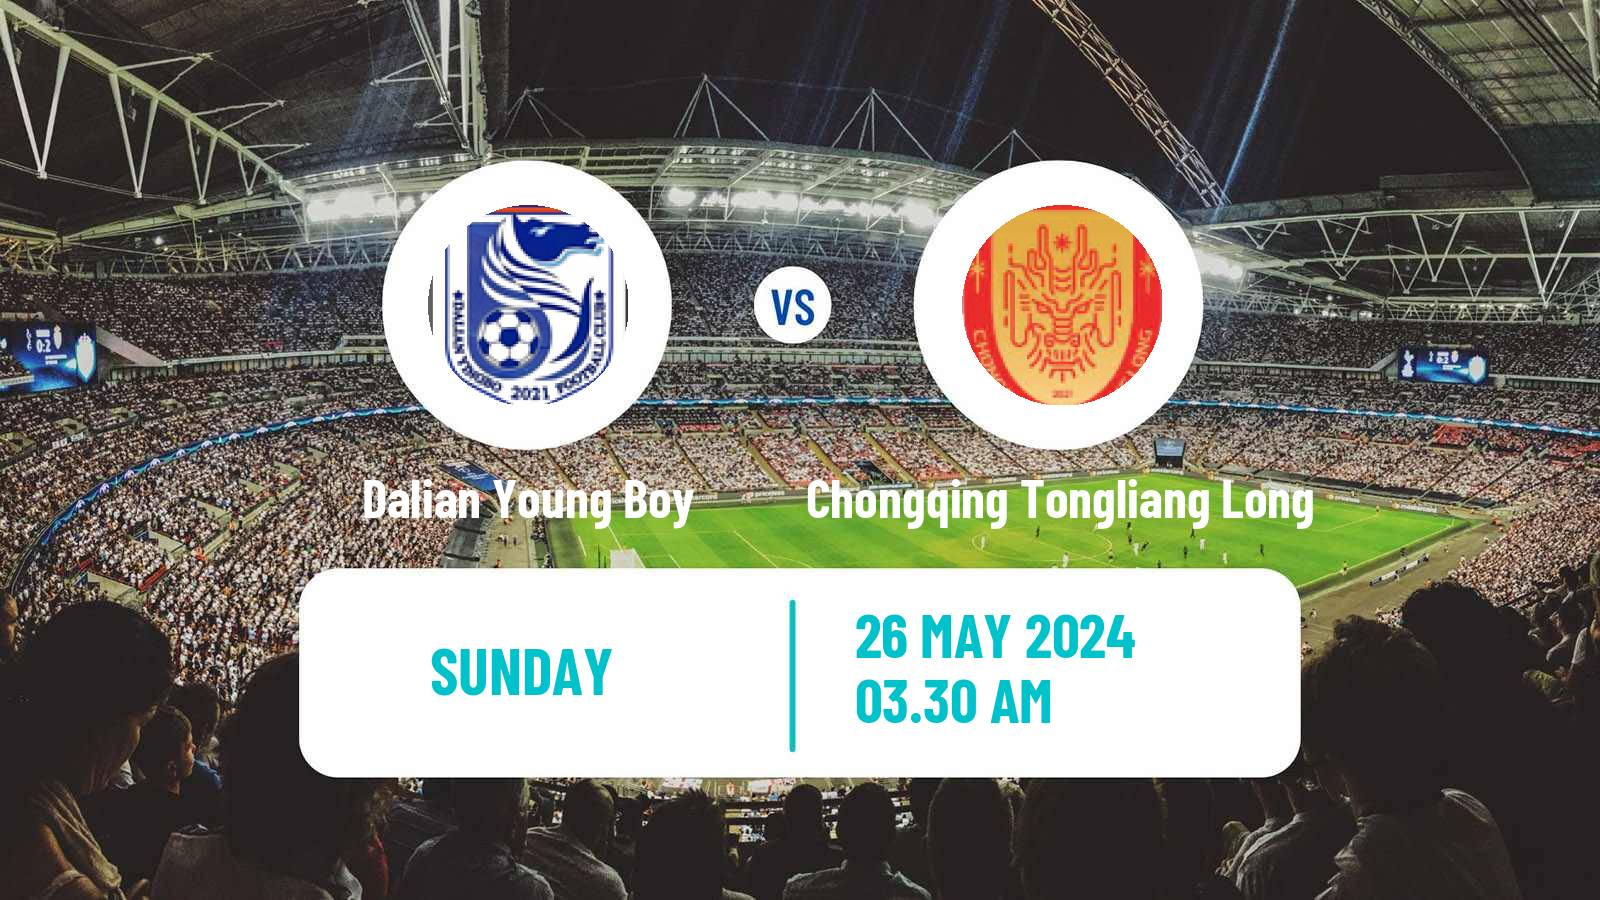 Soccer Chinese Jia League Dalian Young Boy - Chongqing Tongliang Long